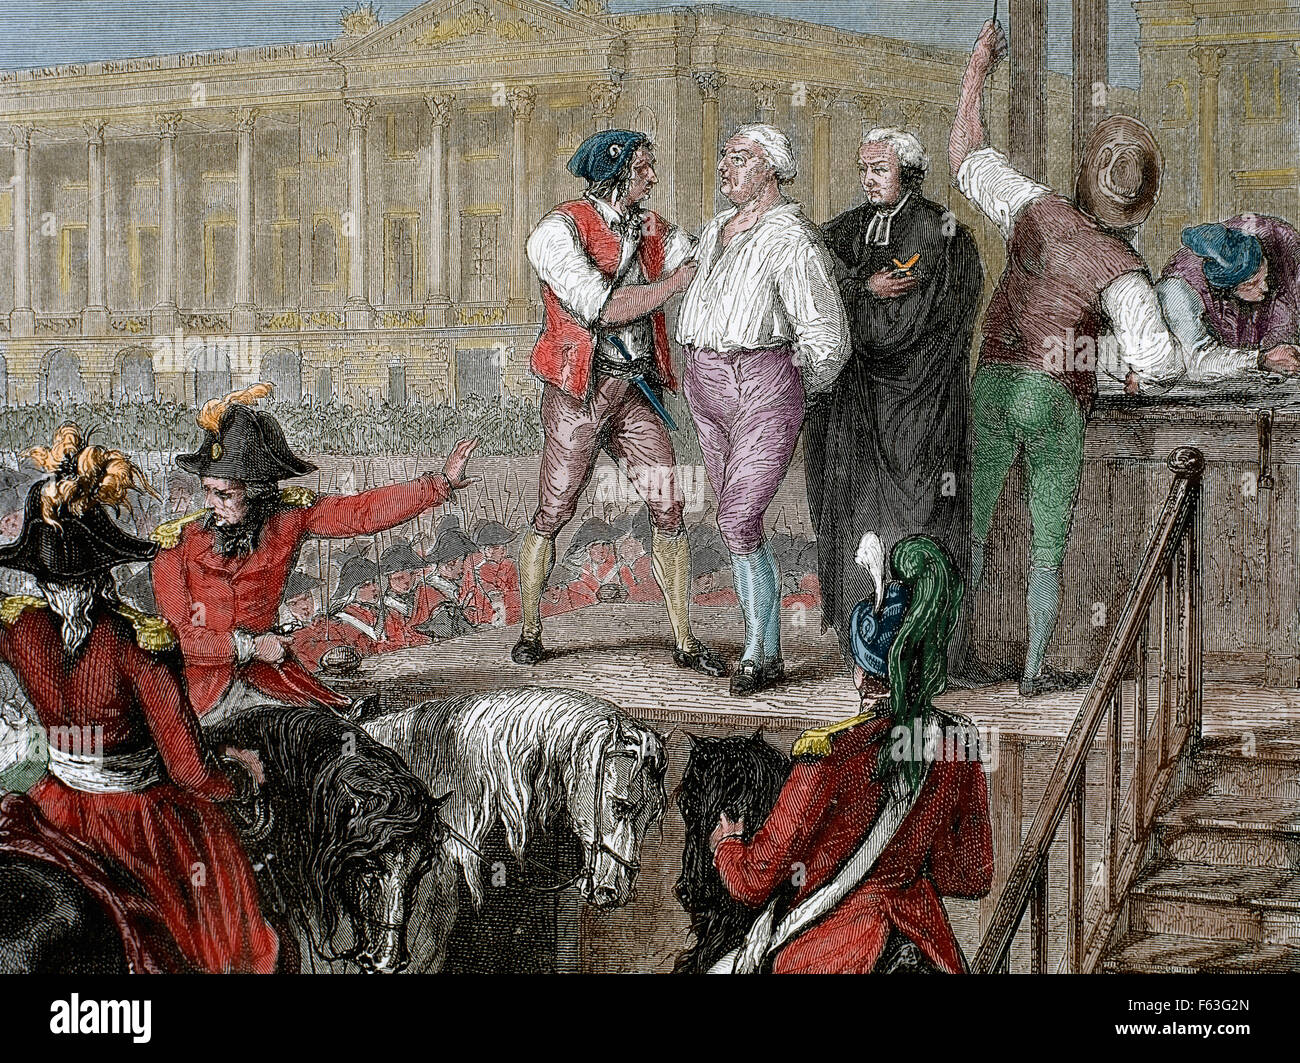 Казнь короля в каком году. Людовик 16 Великая французская революция.